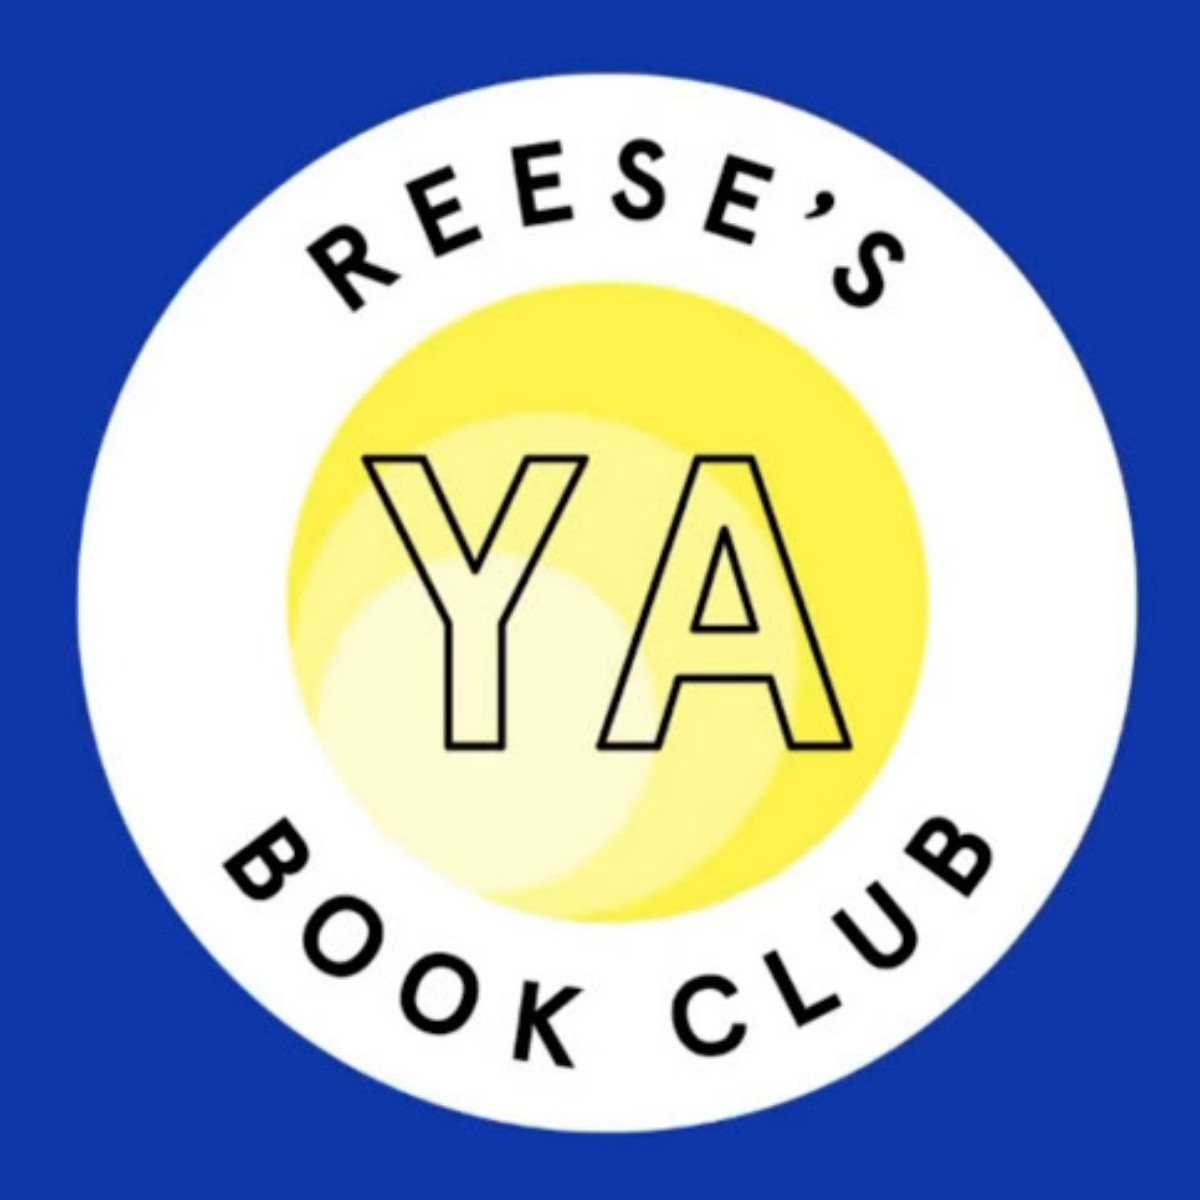 Reese’s YA Book Club Books: Full List with PDF